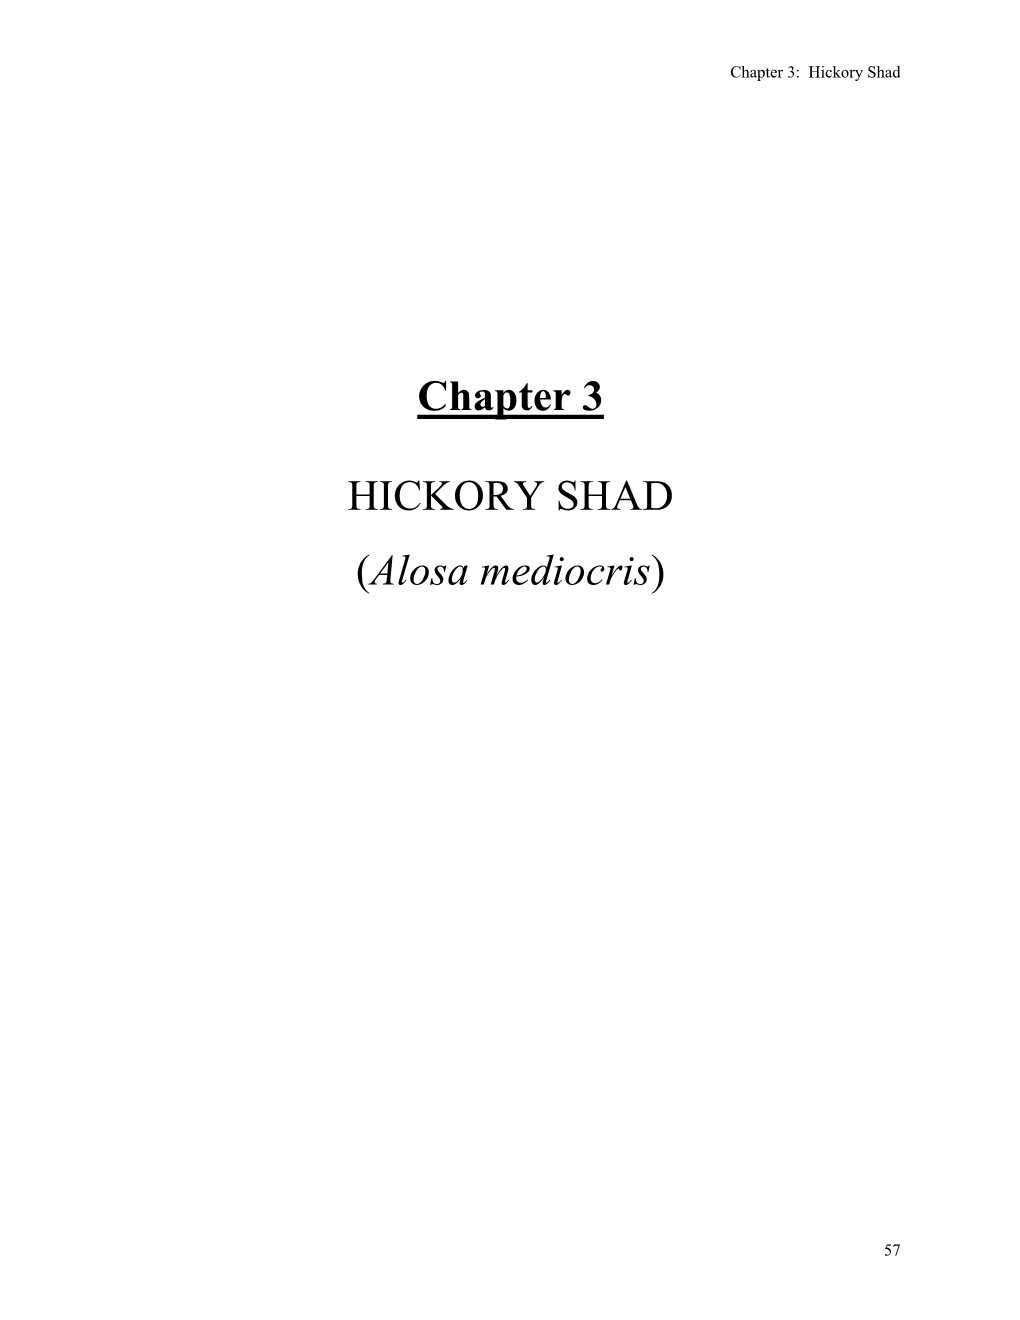 Ch. 3. Hickory Shad